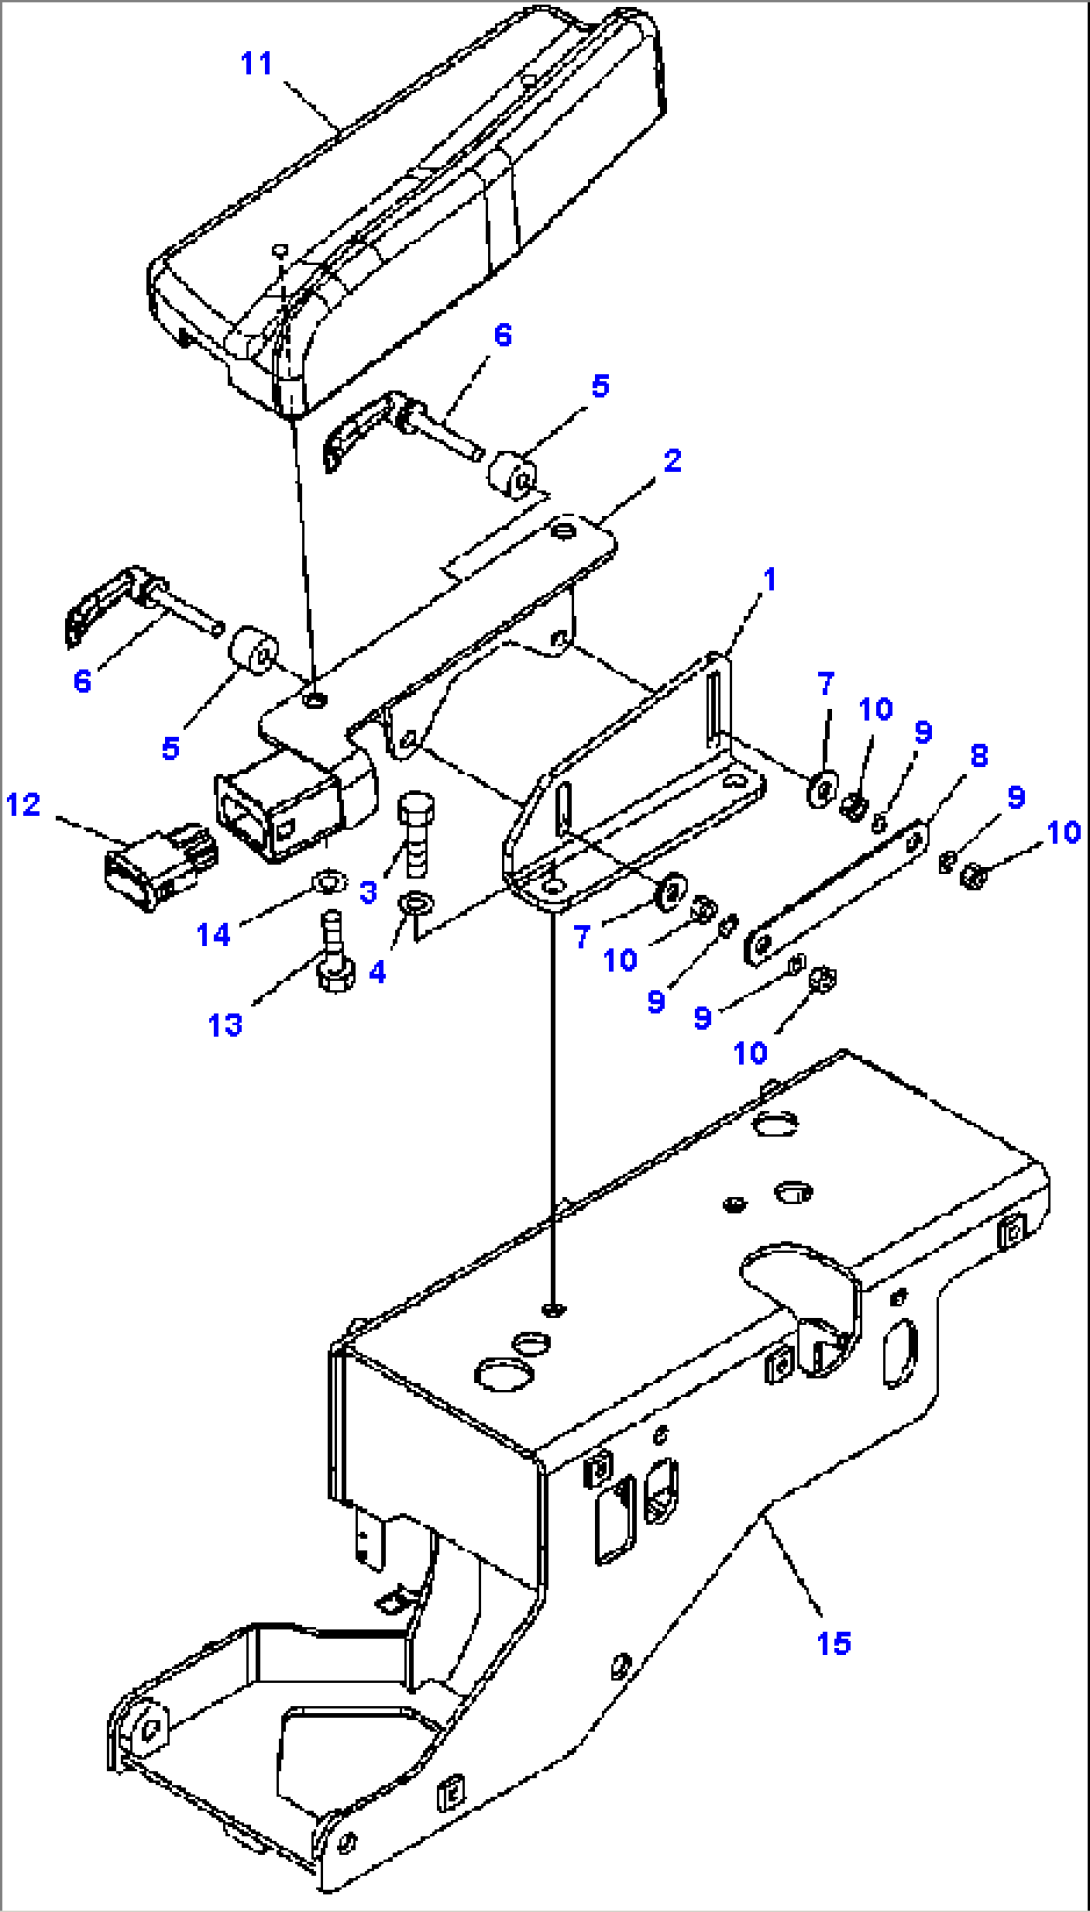 K0110-05A2 OPERATOR SEAT ARMREST FOR JOYSTICK STEERING